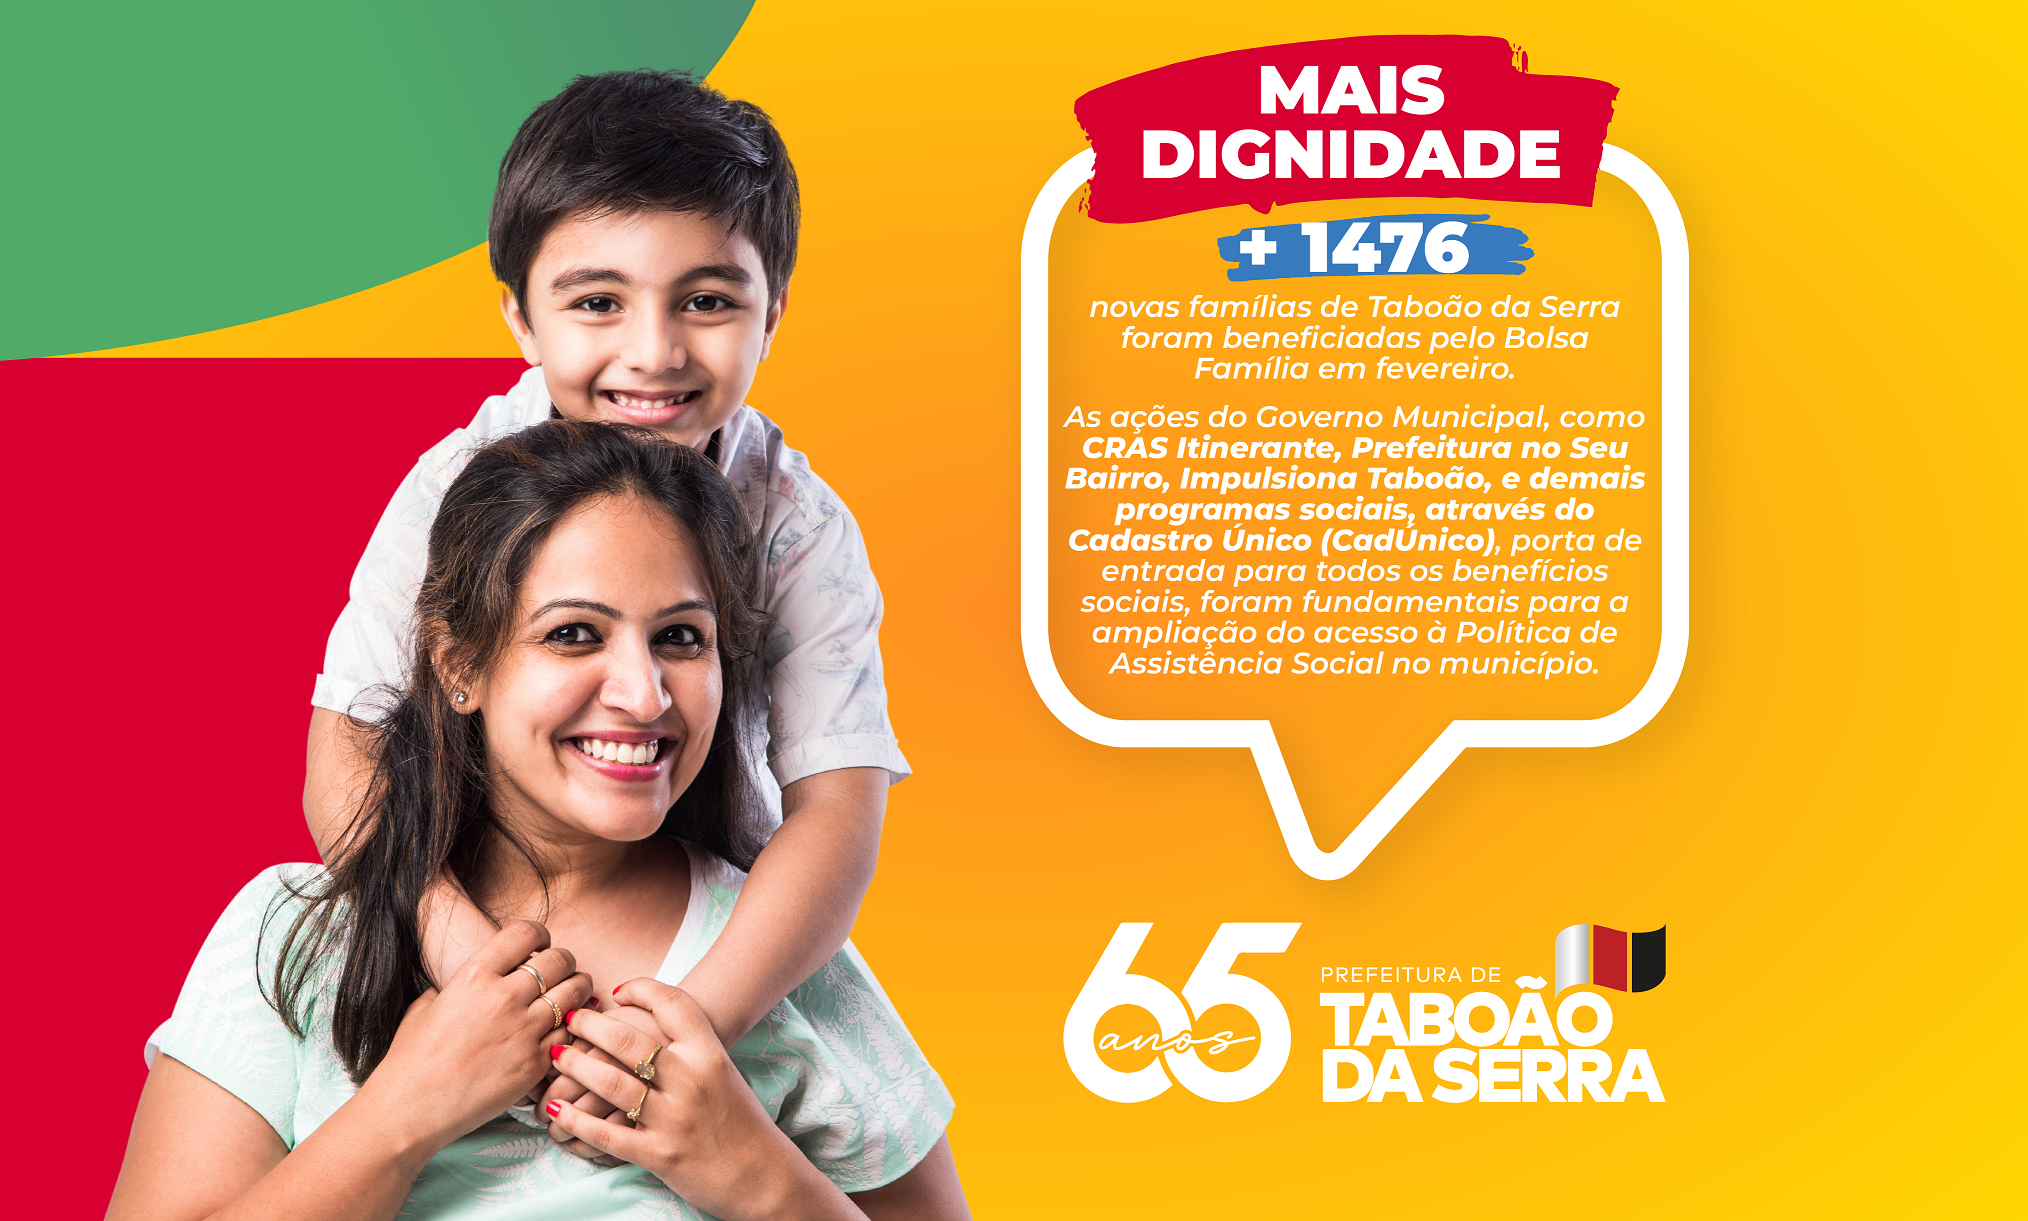 Mais de 1.400 famílias de Taboão da Serra foram beneficiadas pelo Bolsa Família em fevereiro